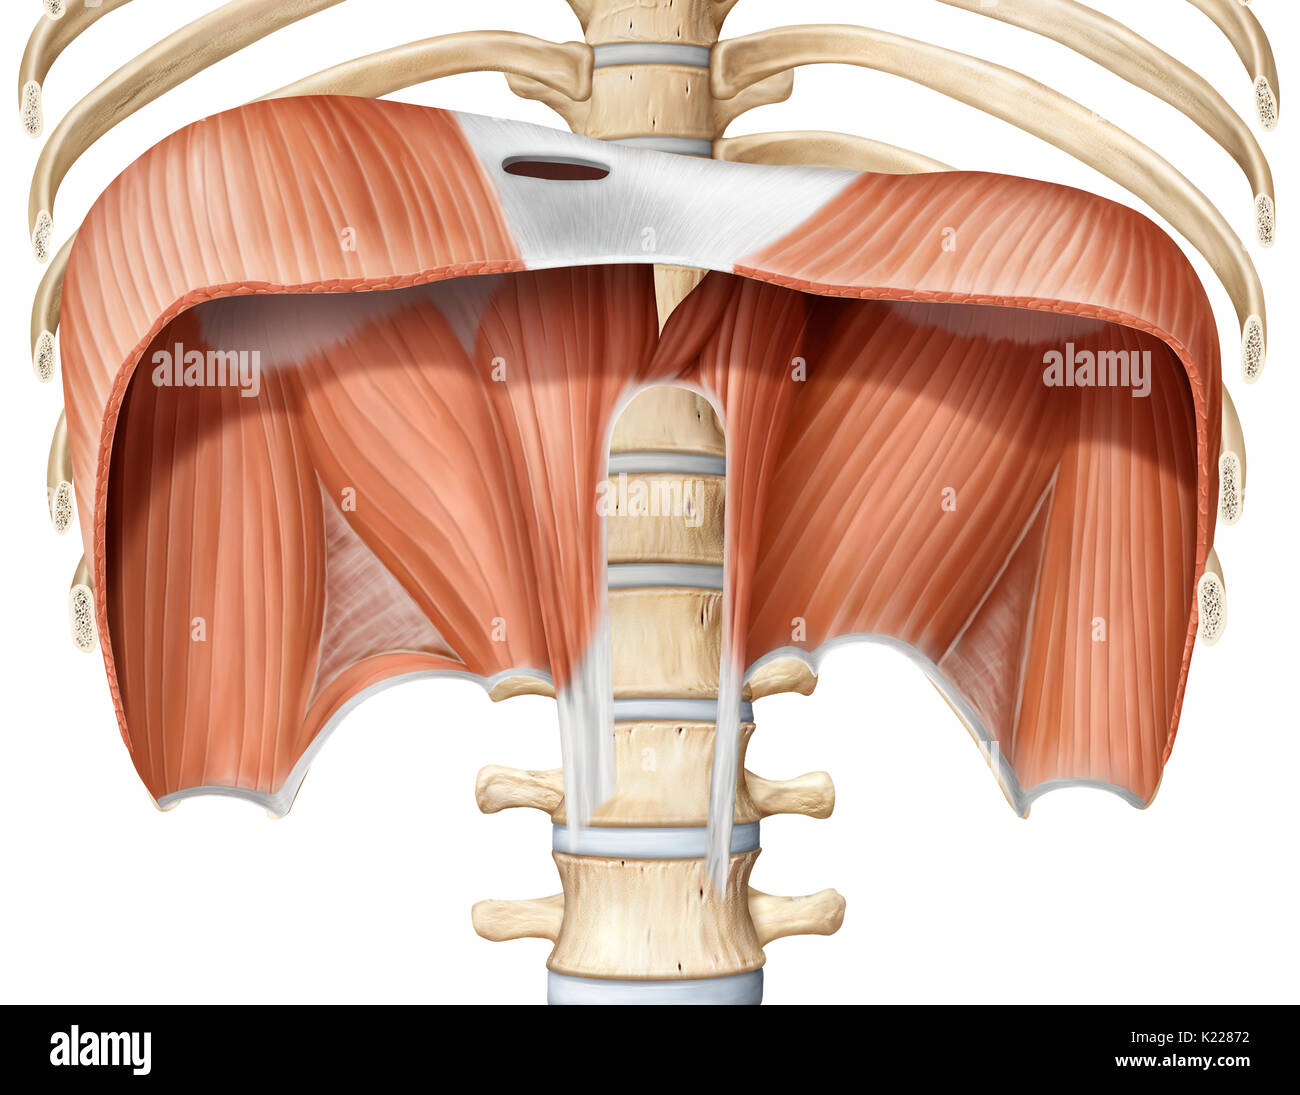 Wichtigste Muskel einatmen Trennung der Hohlräume des Thorax und Abdomen; seine Kontraktion erhöht die Größe der Brusthöhle, wodurch die Lunge zu erweitern und in der Luft. Stockfoto